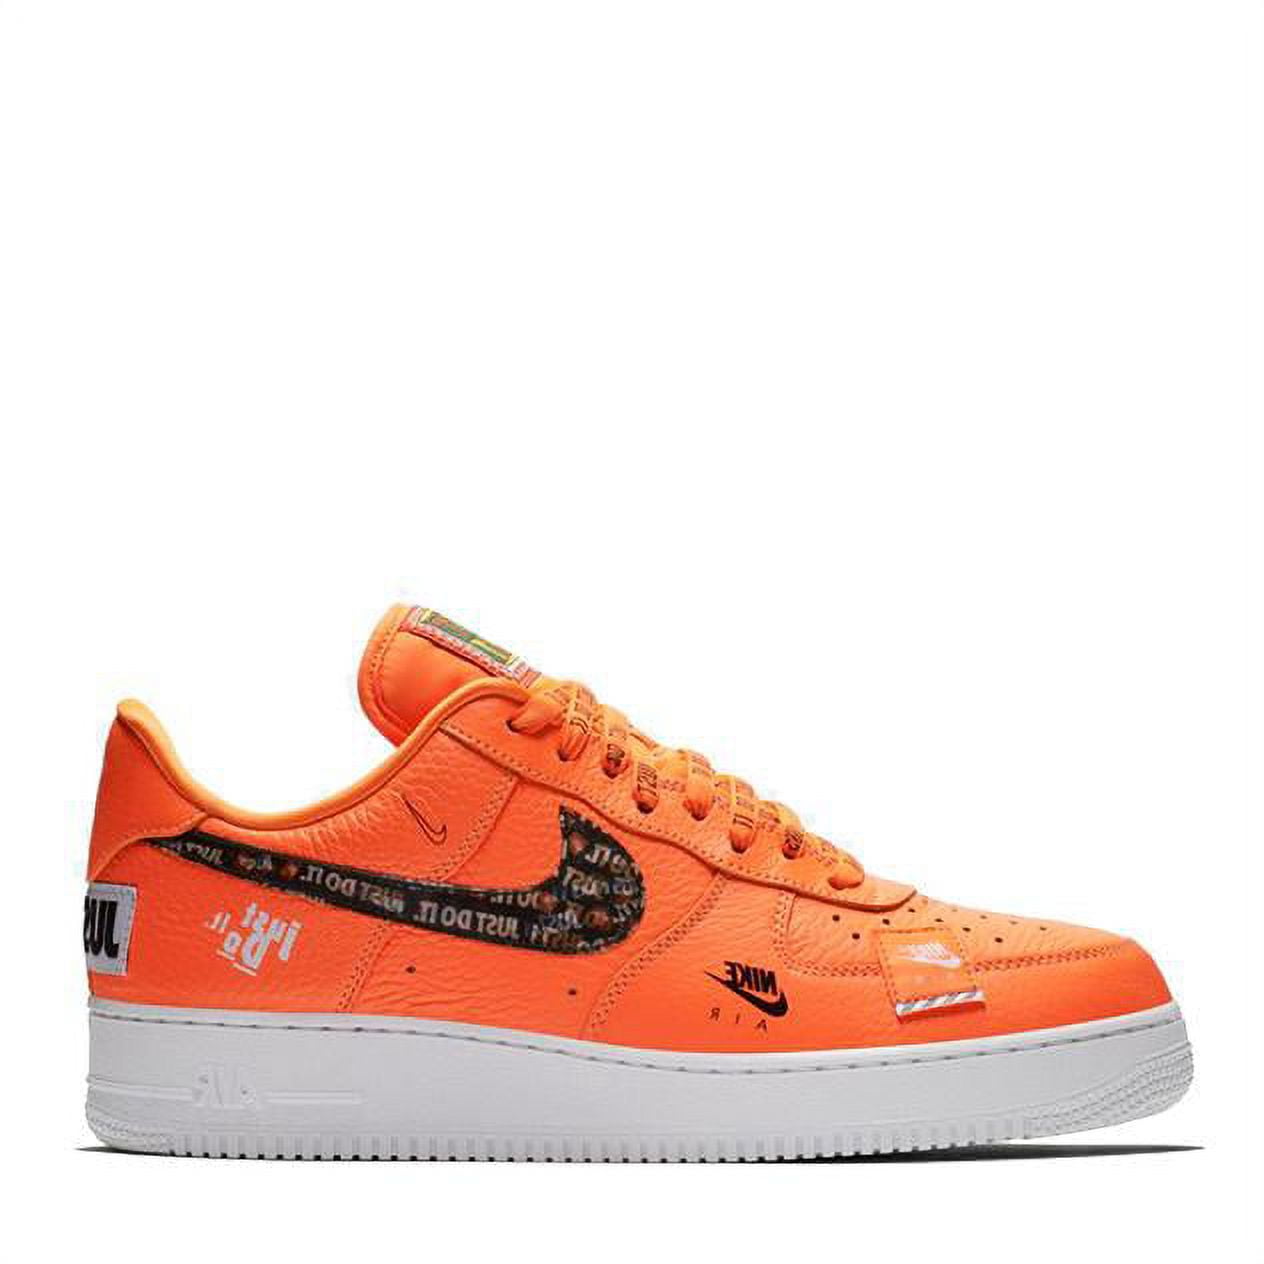 Mens Nike Air Force 1 Low '07 Premium Just Do It Total Orange Black Wh 